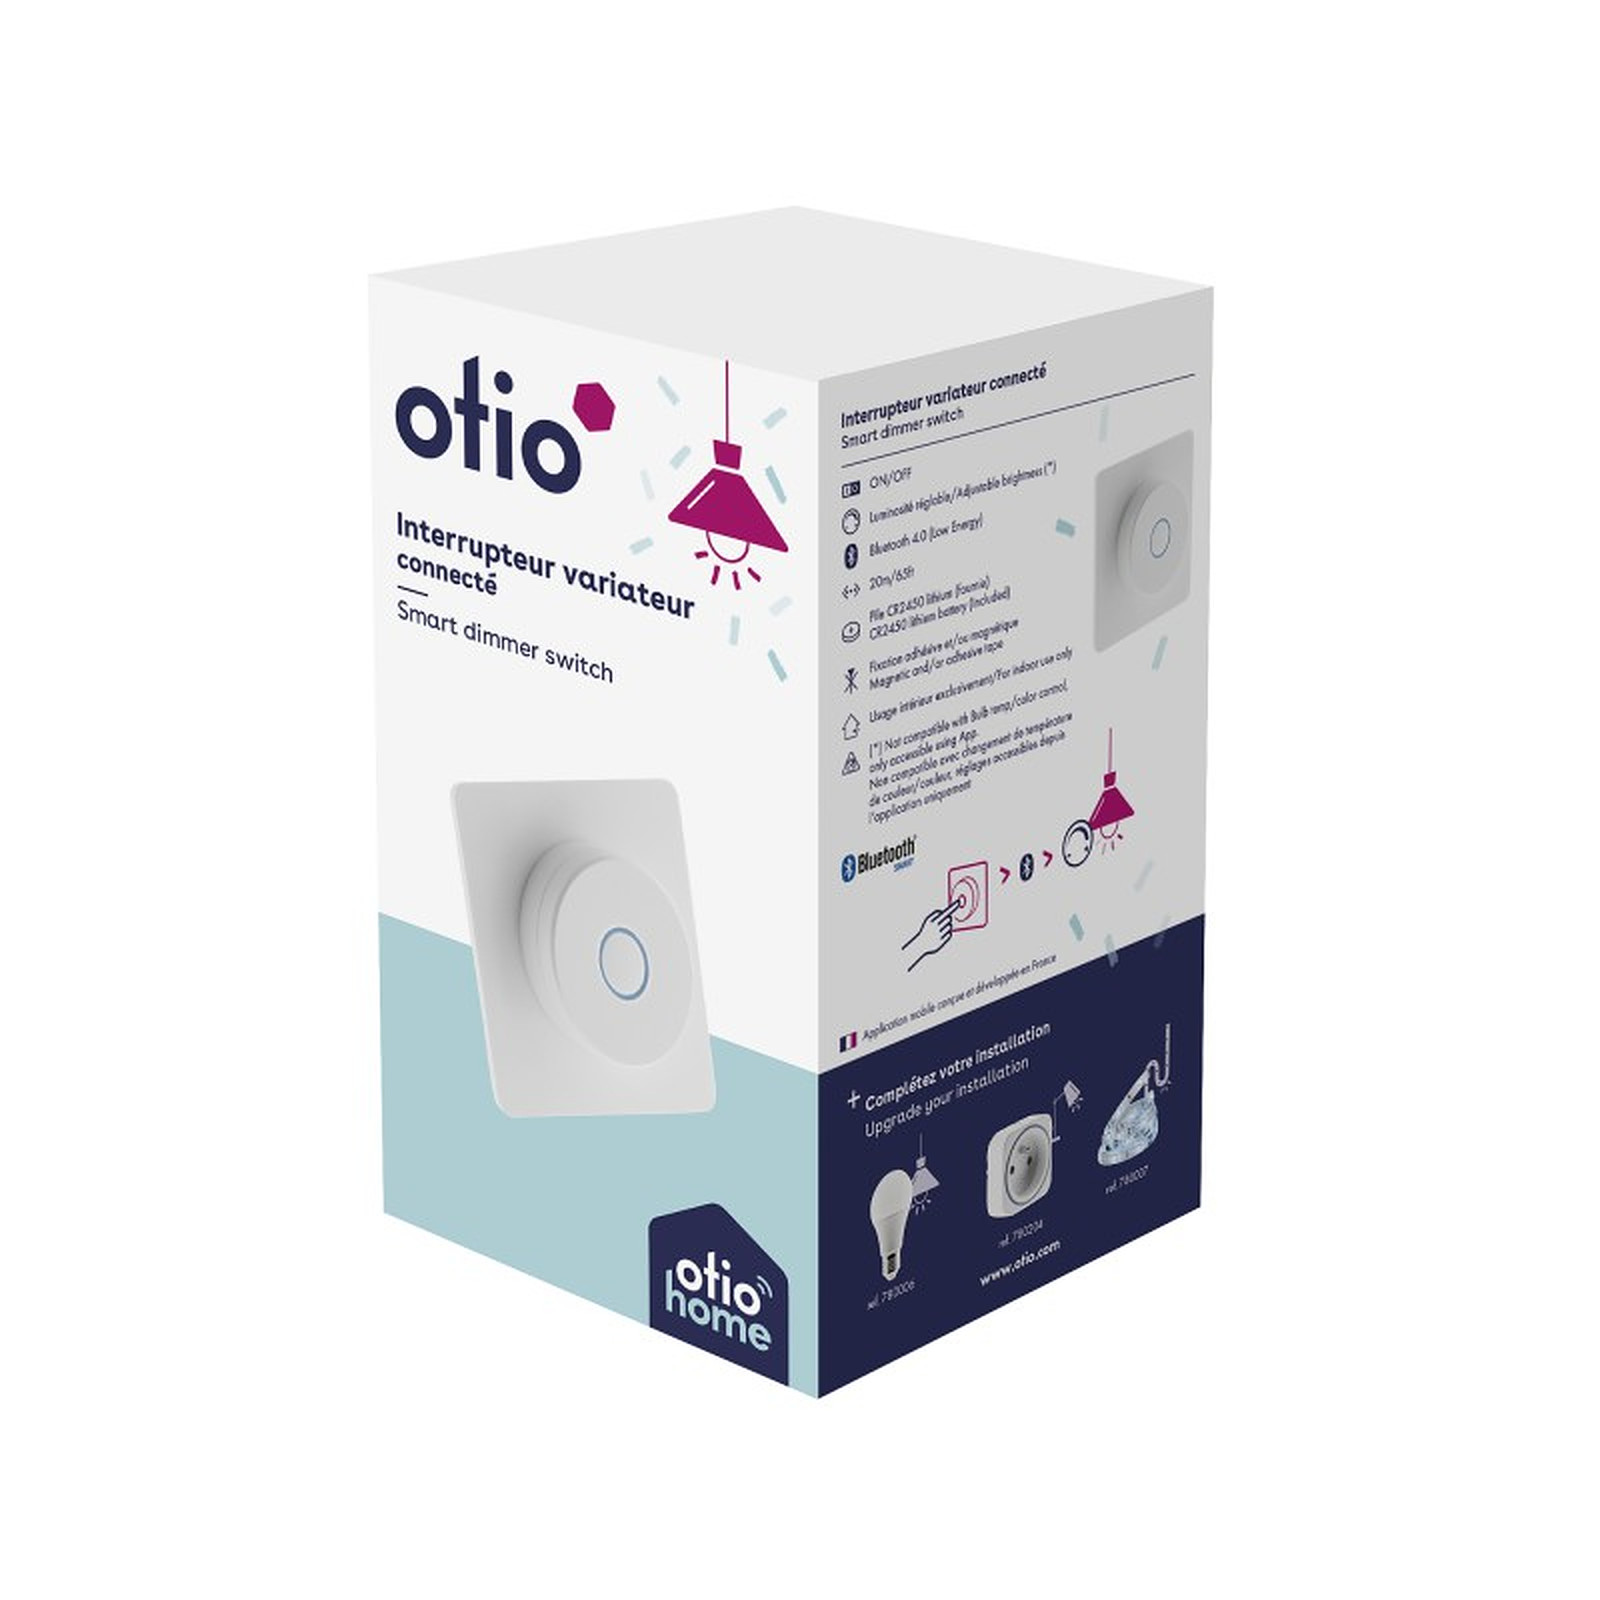 Otio-Interrupteur variateur connecte - Otio - Prise connectee Otio